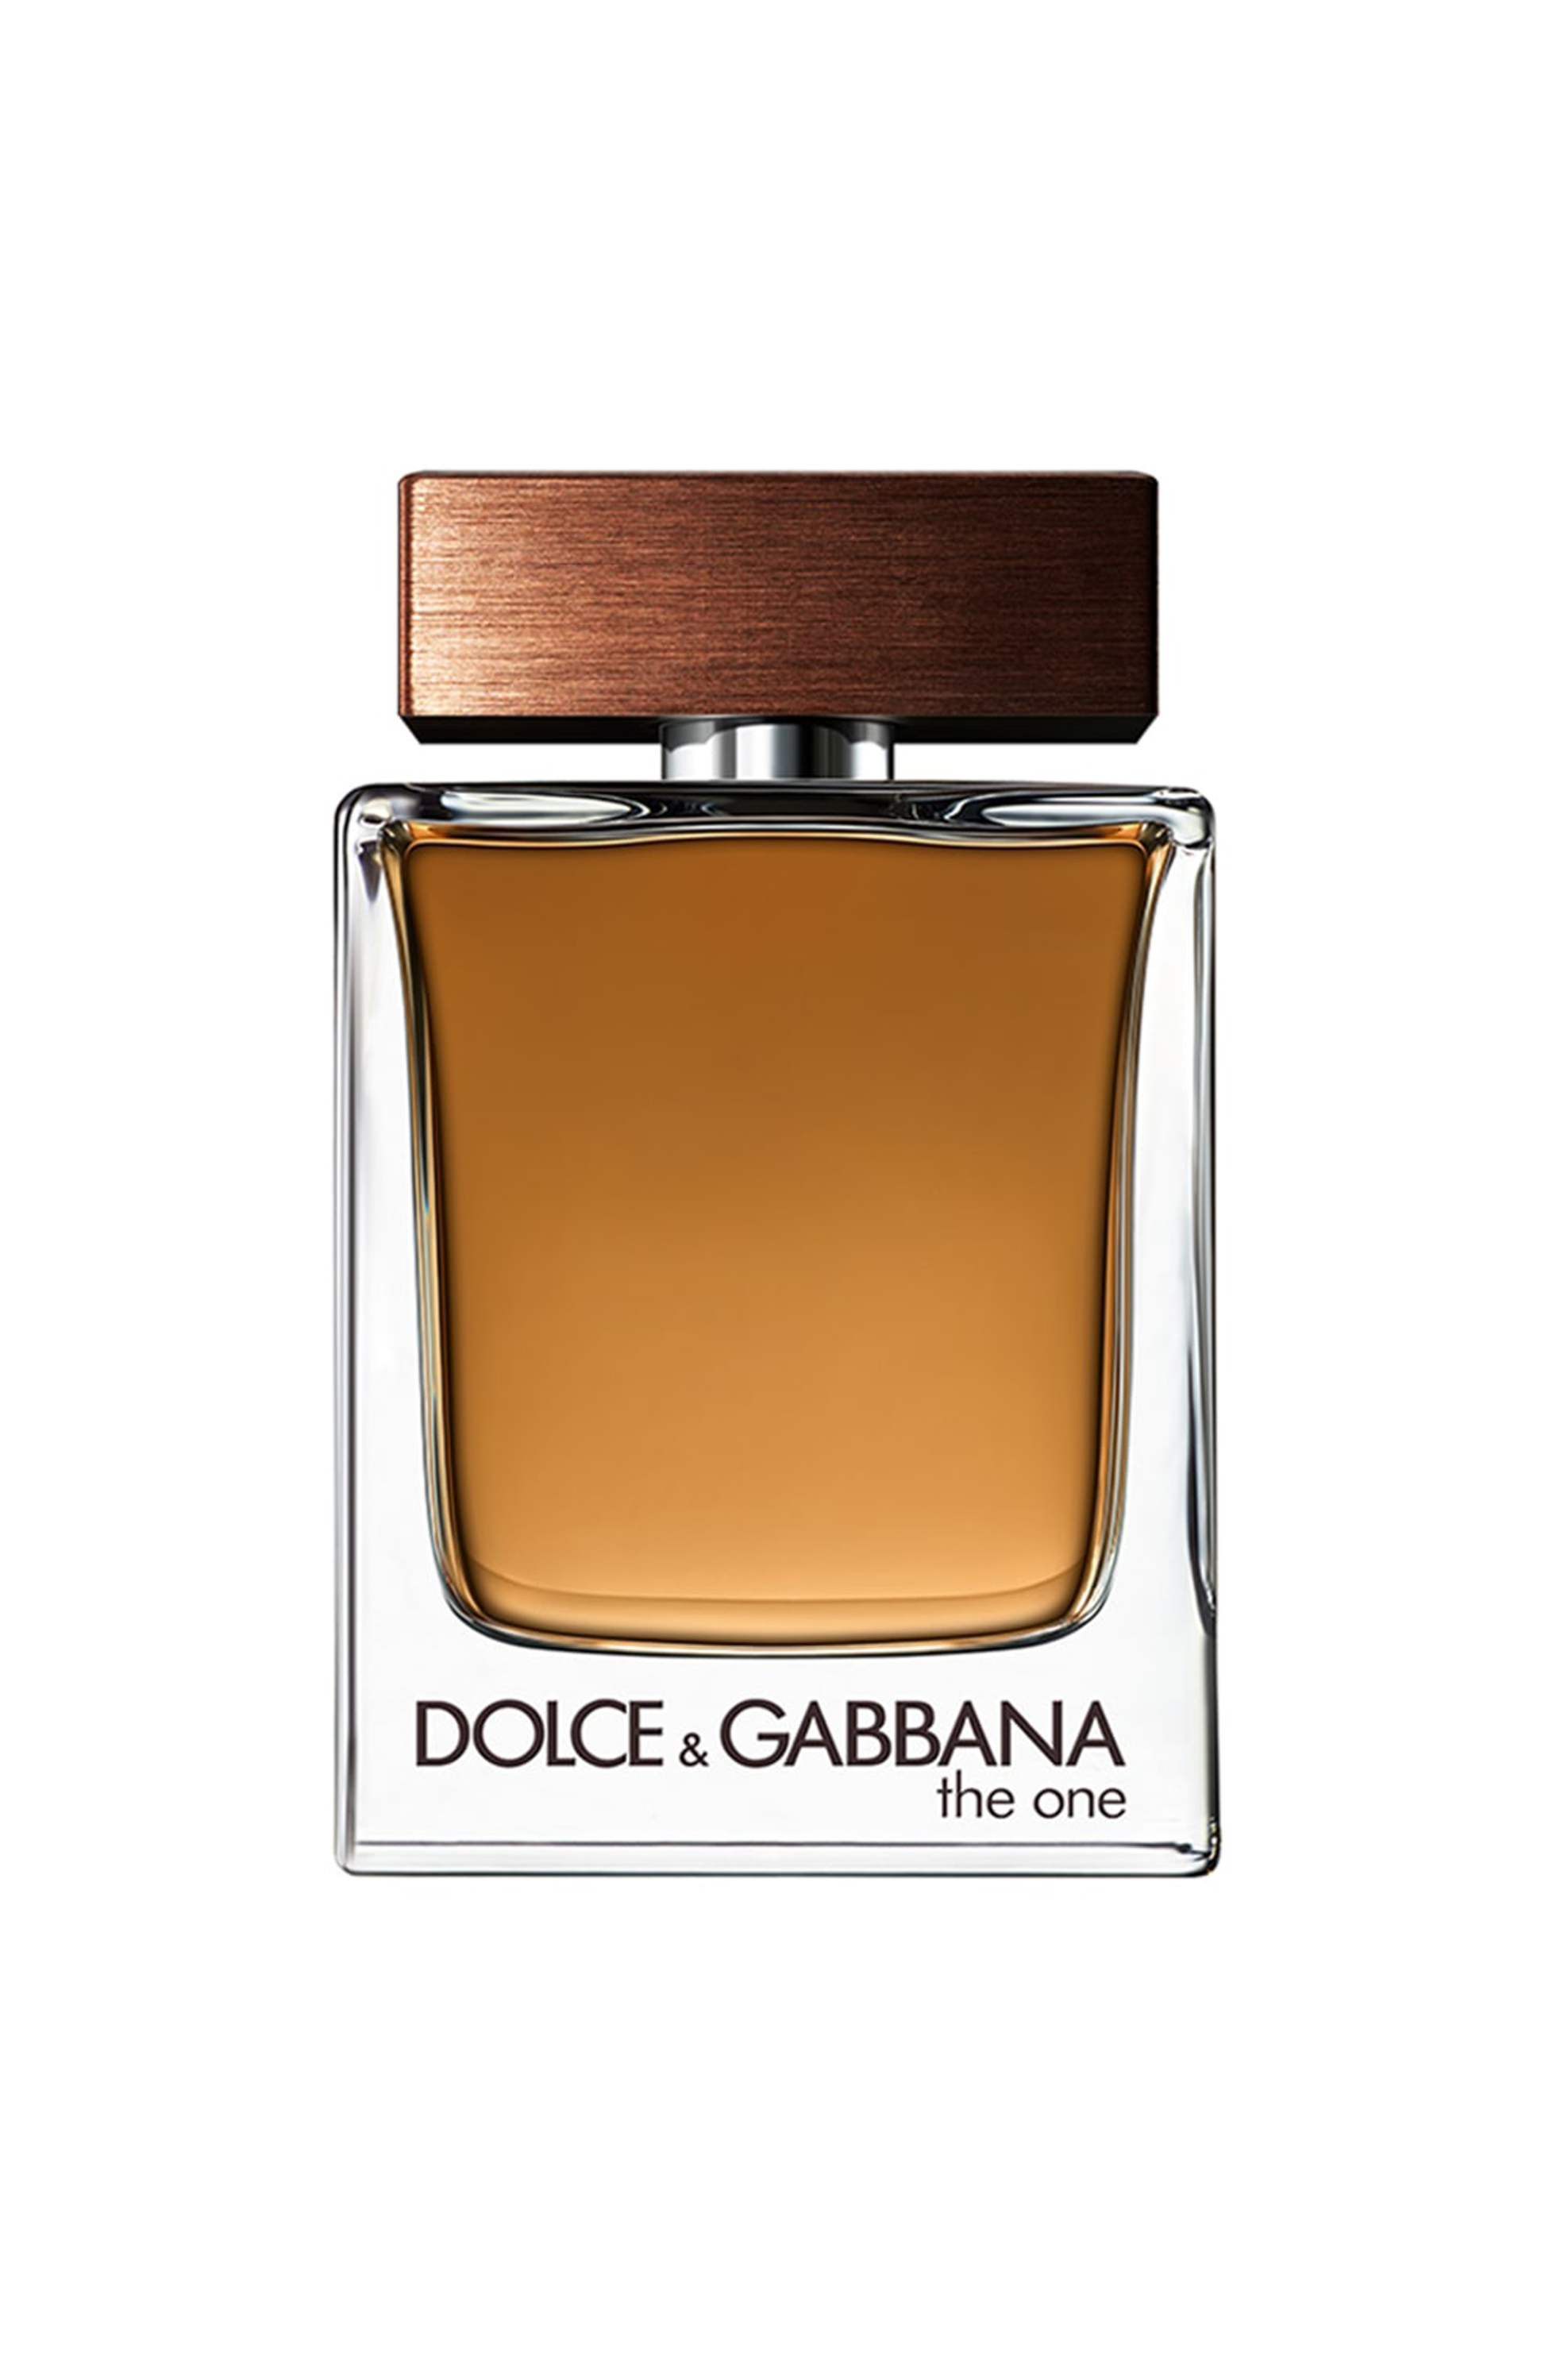 Προϊόντα Ομορφιάς > ΑΡΩΜΑΤΑ > Ανδρικά Αρώματα > Eau de Toilette Dolce & Gabbana The One for Men Eau de Toilette - I30212150000